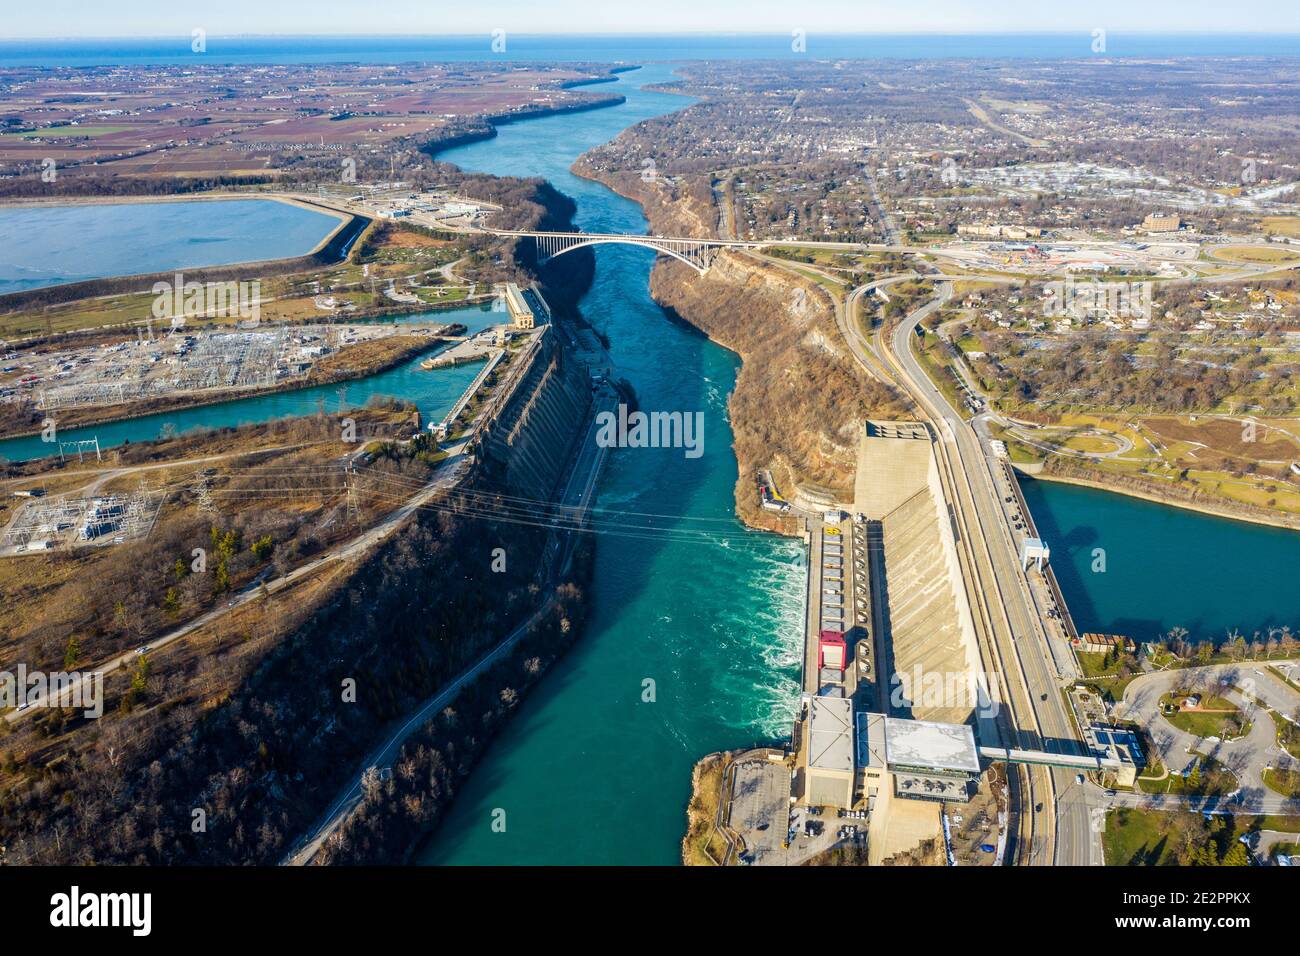 Robert Moses Niagara Power Plant, central hidroeléctrica, Lewiston, NY, EE.UU. (Derecha y Sir Adam Beck no 2 Generating Station, Canadá (izquierda) Foto de stock